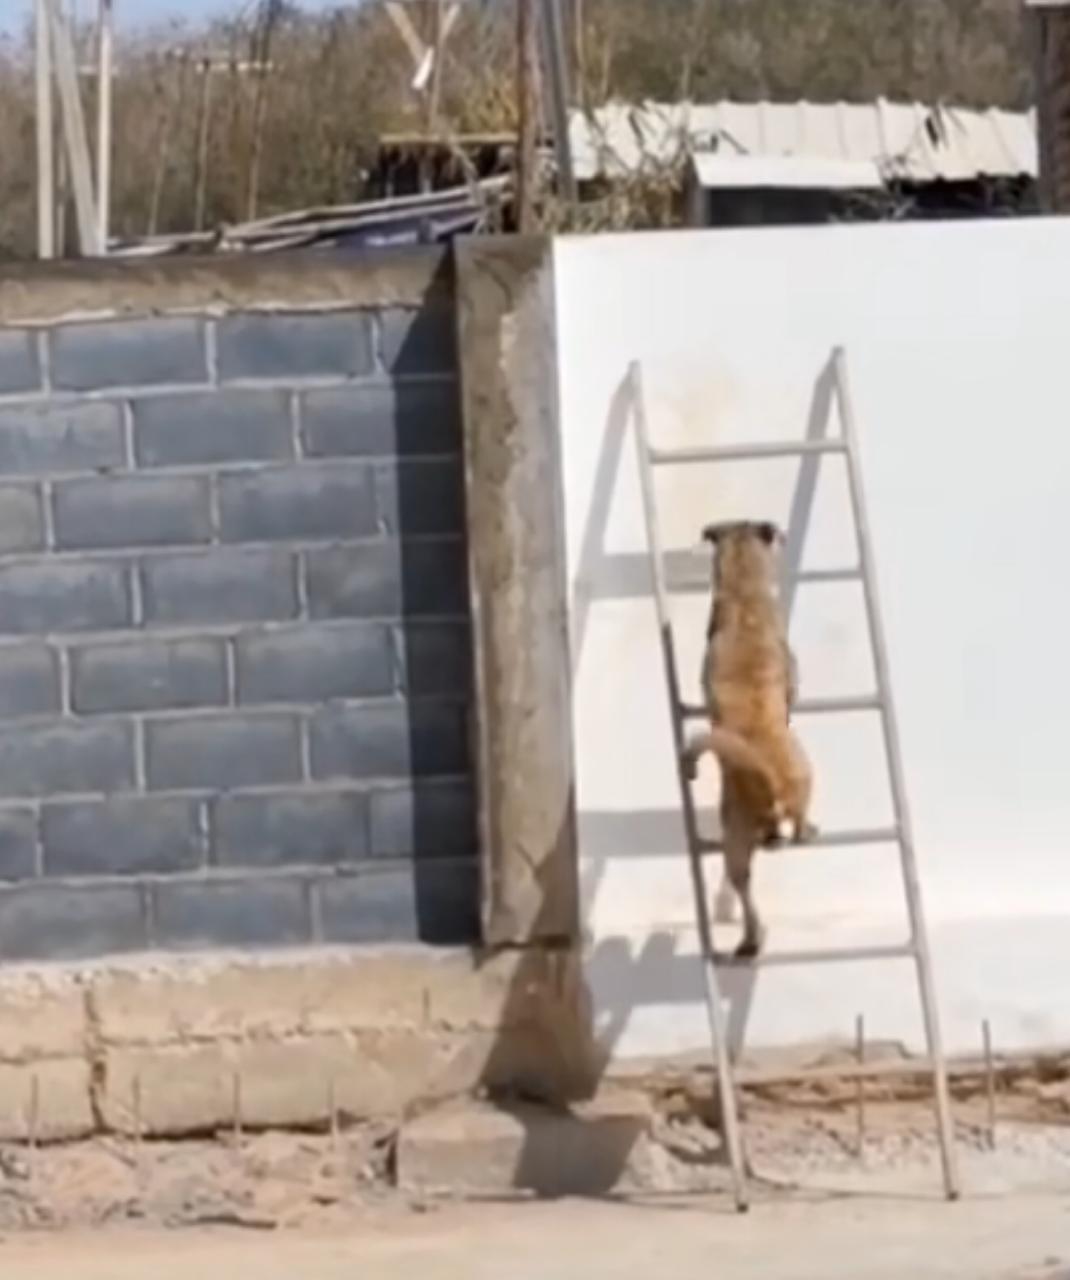 Dupla Canina Escapista: Cachorros Usam Escada para Fugir de Casa e Partir em Aventura